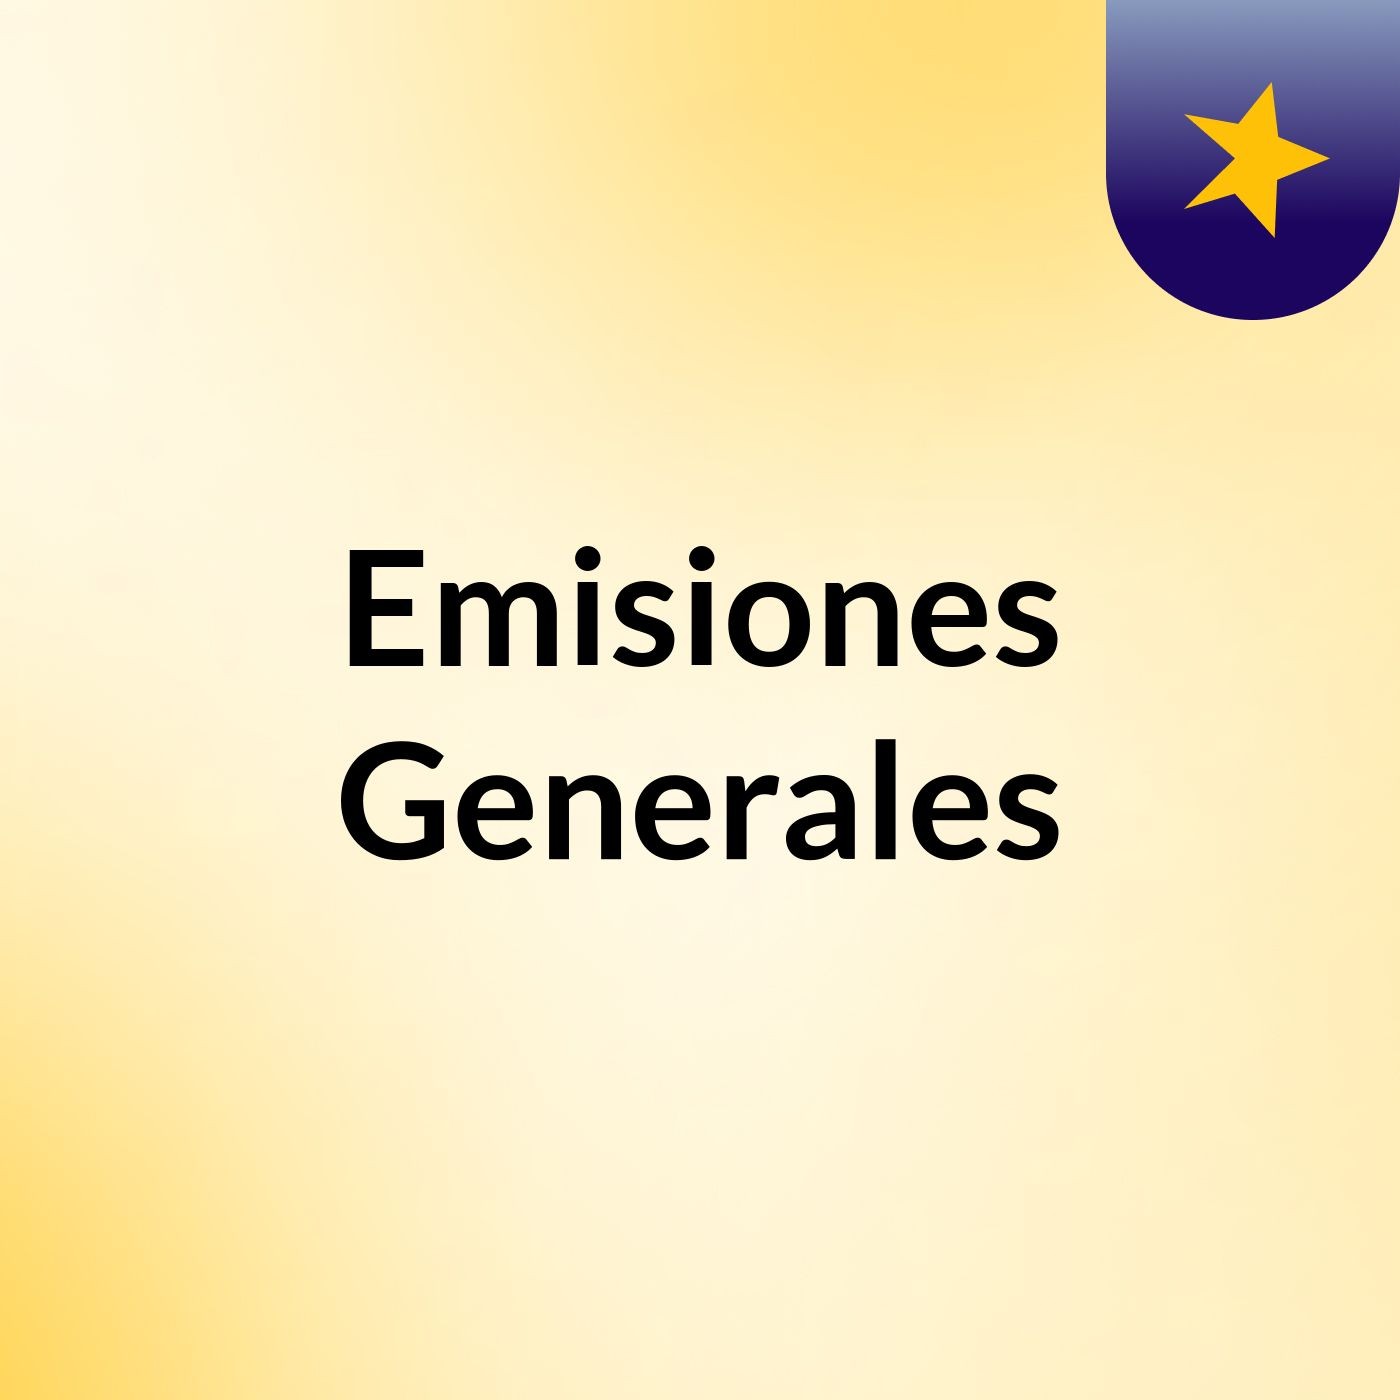 Emisiones Generales